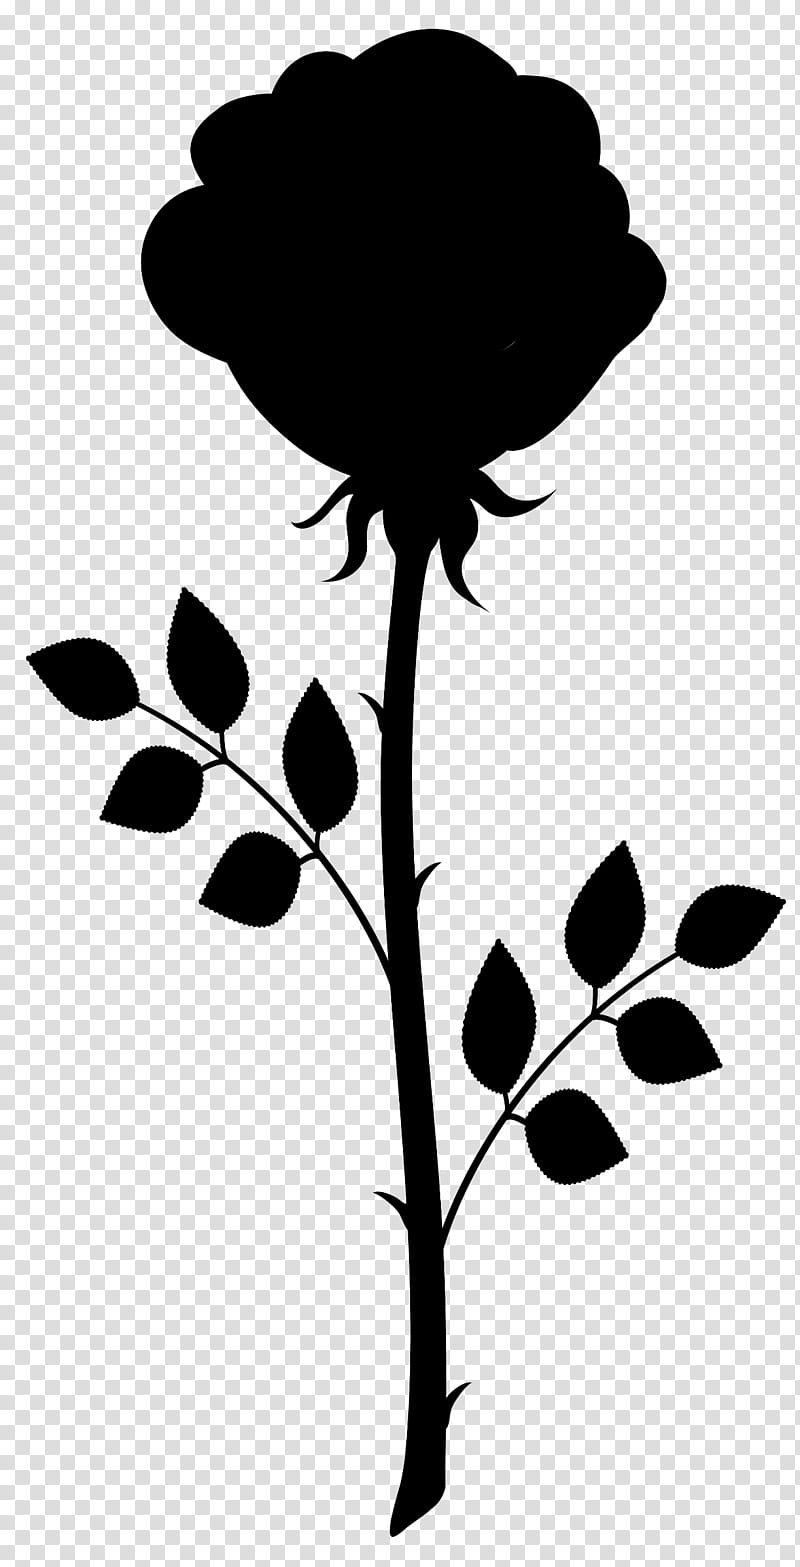 Rose Stencil, Leaf, Silhouette, Plant Stem, Computer, Design M Group, Plants, Black M transparent background PNG clipart